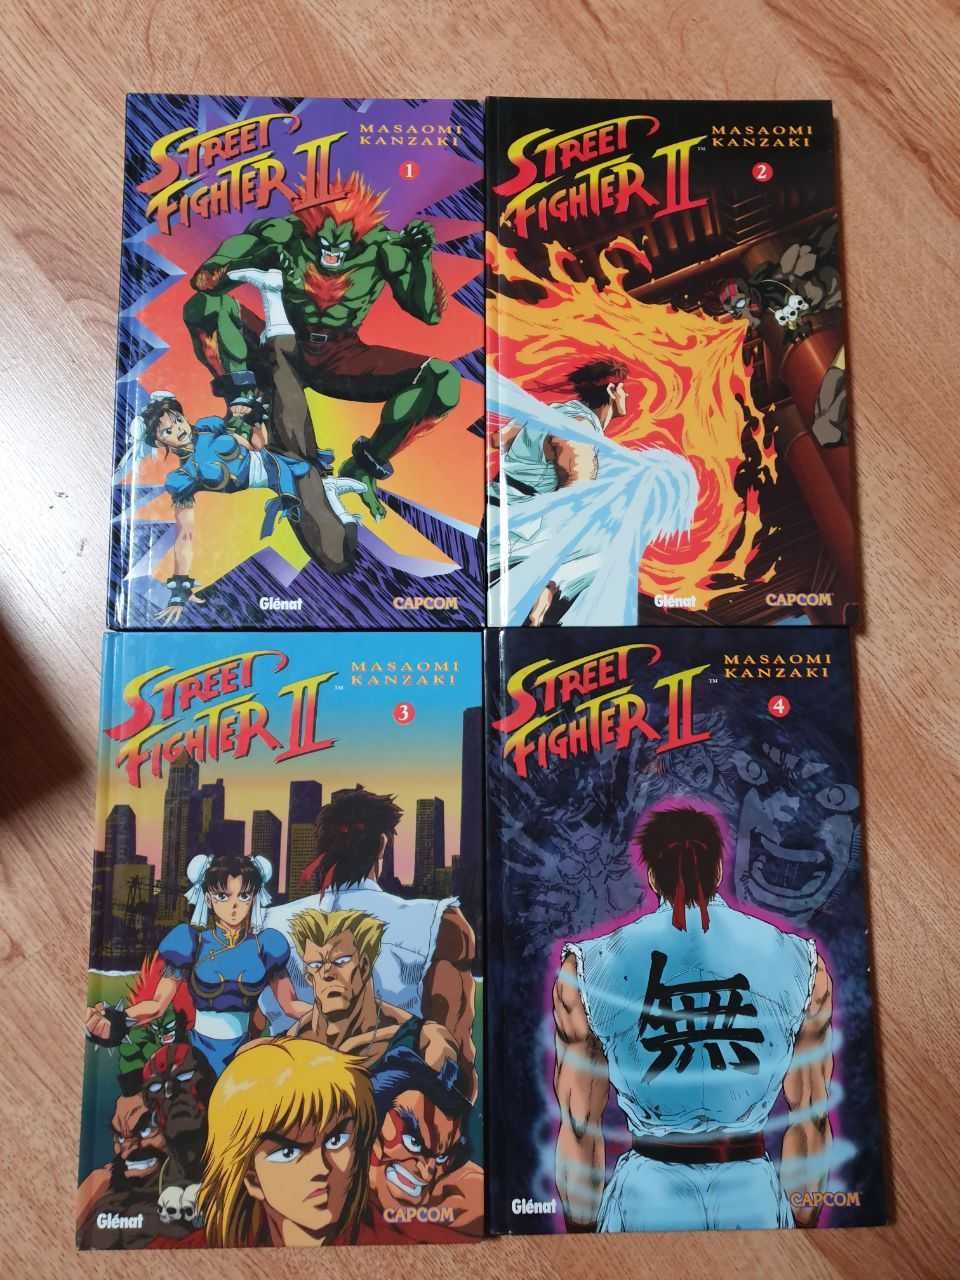 Colecção completa Banda Desenhada Street Fighter II, 4 volumes